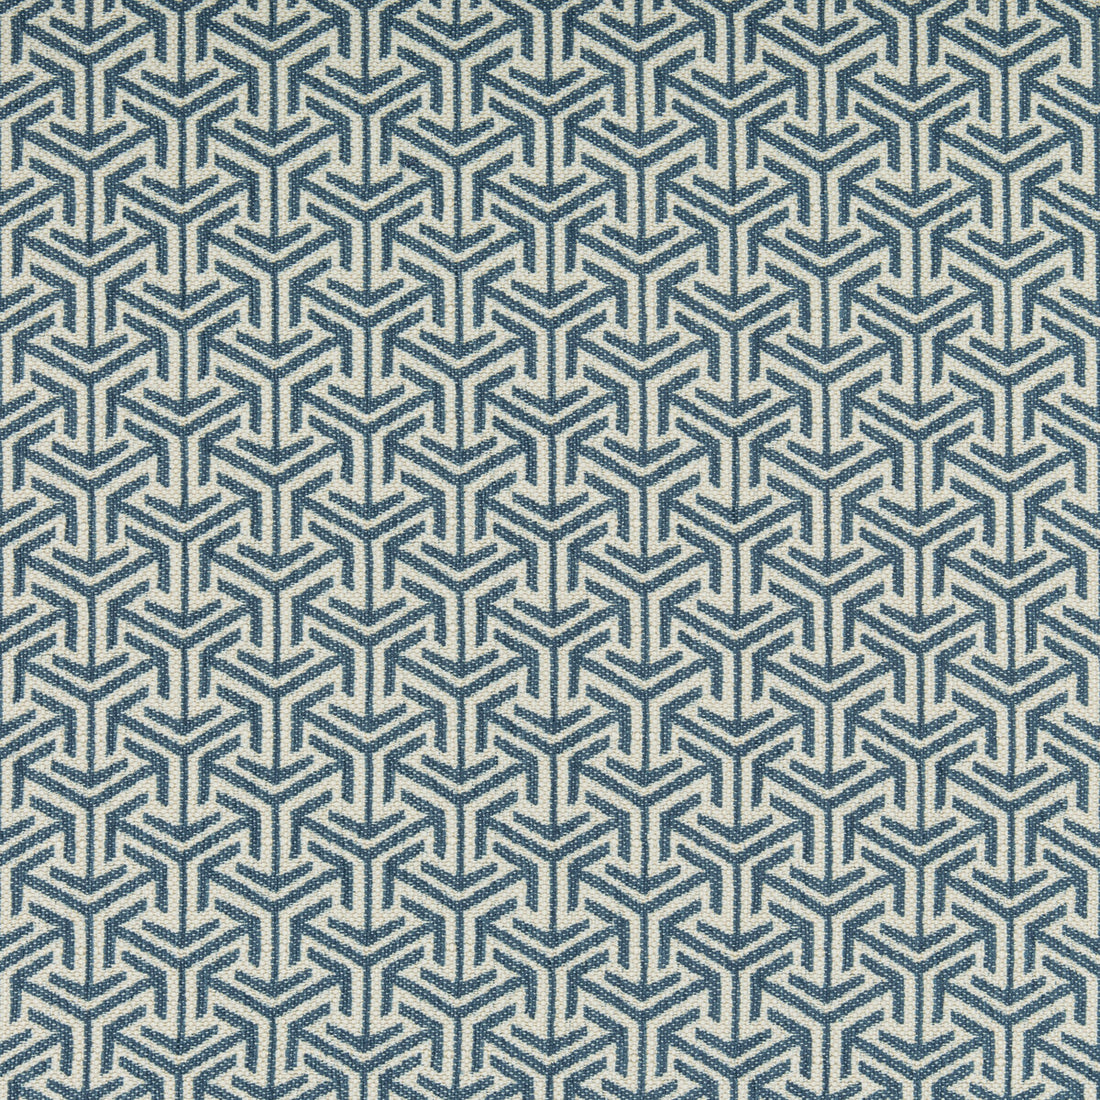 Kravet Design fabric in 35715-5 color - pattern 35715.5.0 - by Kravet Design